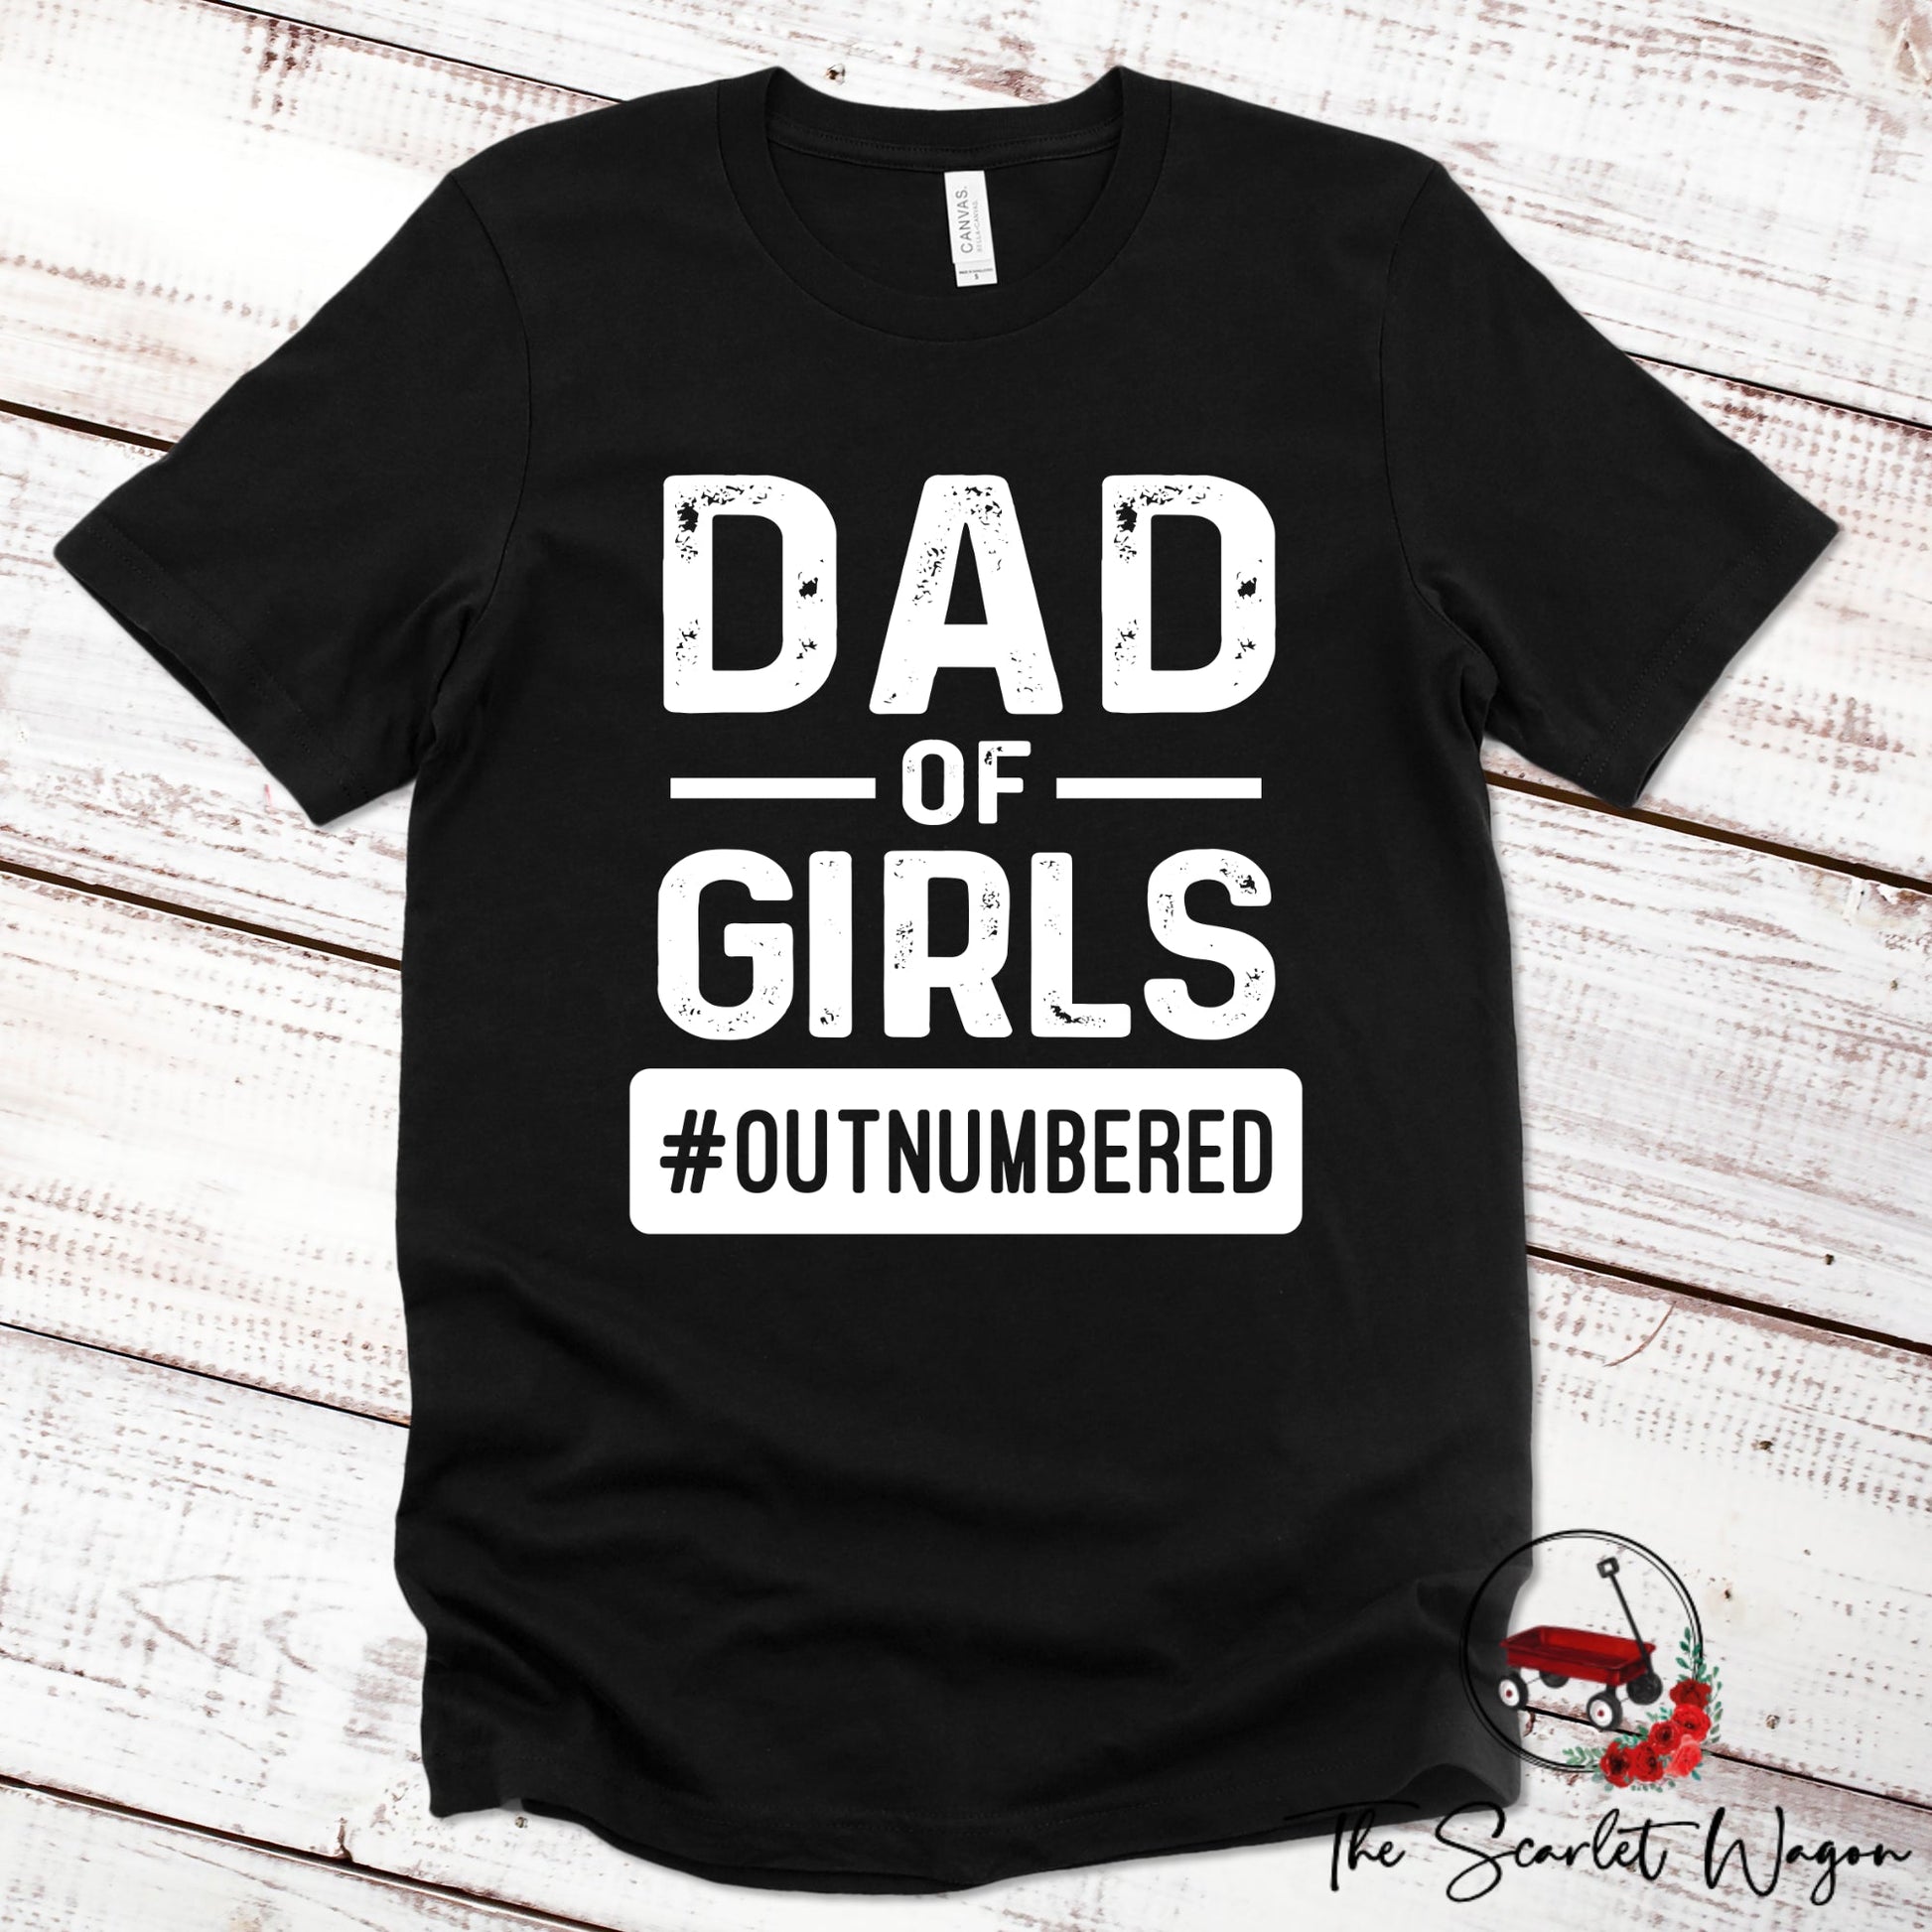 Dad of Girls #Outnumbered Premium Tee Scarlet Wagon Black XS 